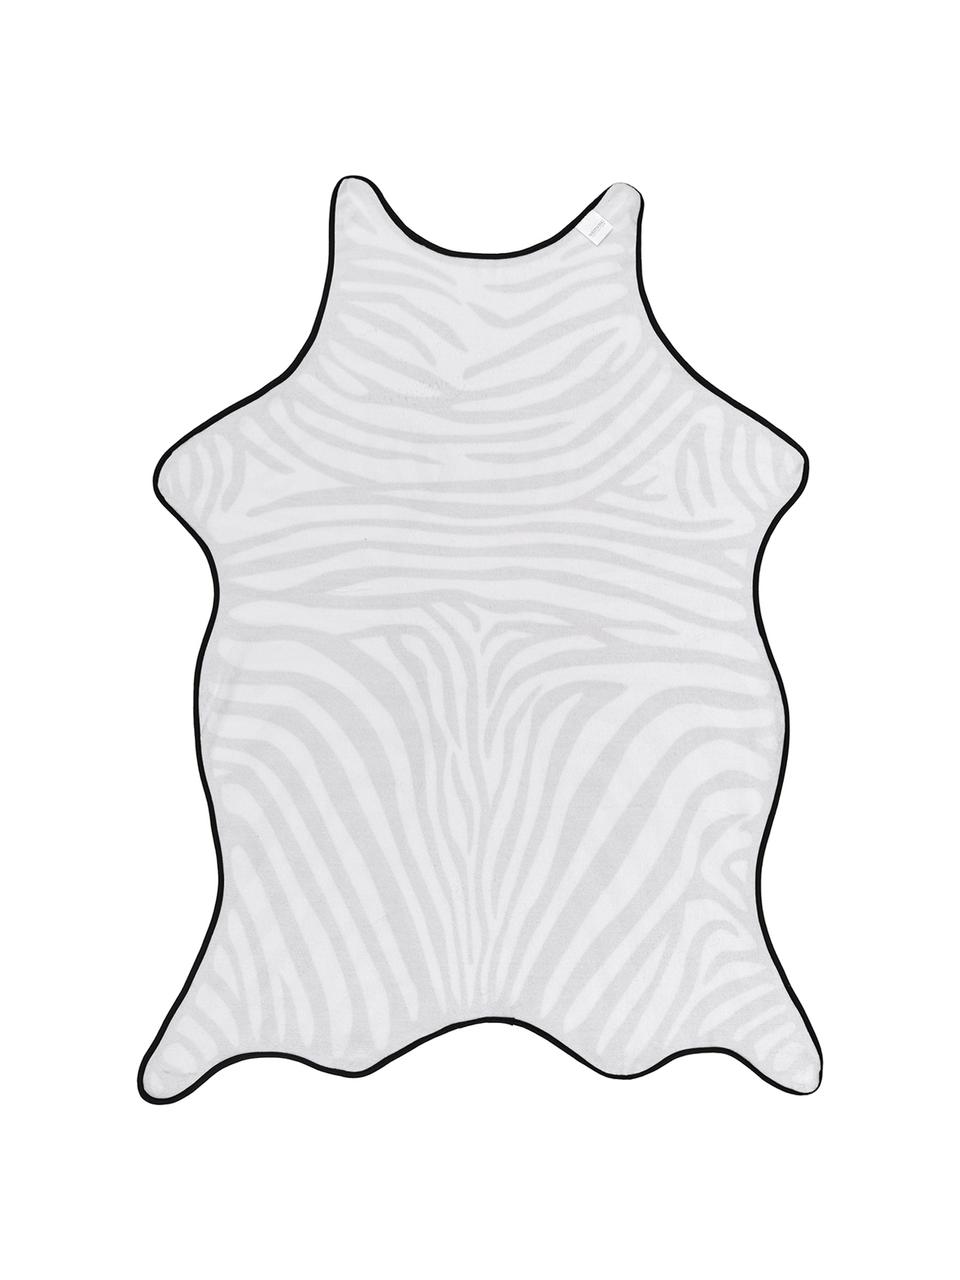 Strandlaken Wildhorse met zebra print, 55% polyester, 45% katoen
Zeer lichte kwaliteit 340 g/m², Wit met zwarte vlekken, 112 x 150 cm